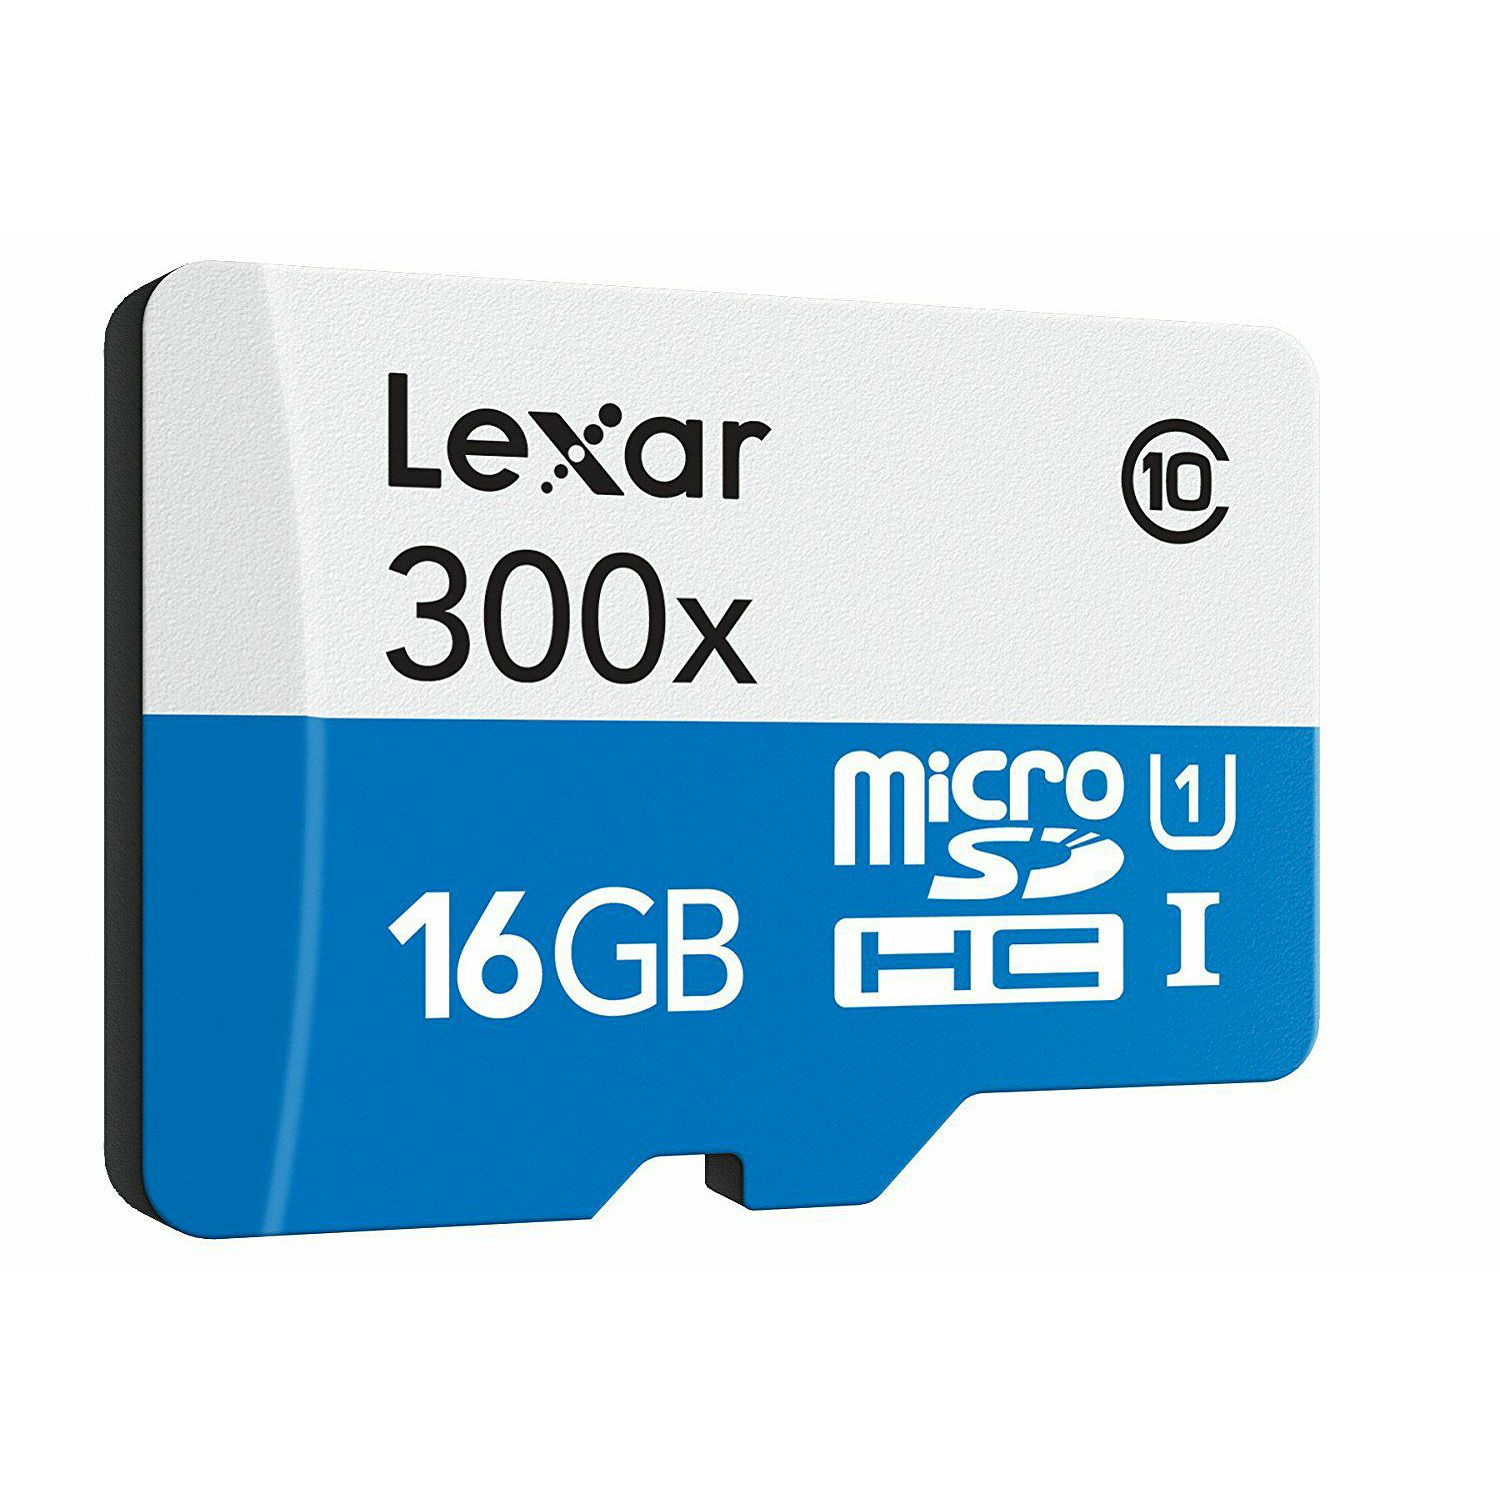 Lexar microSDHC 16GB 300x 45MB/s Class 10 High Speed memorijska kartica sa adapterom LSDMI16GBBEU300